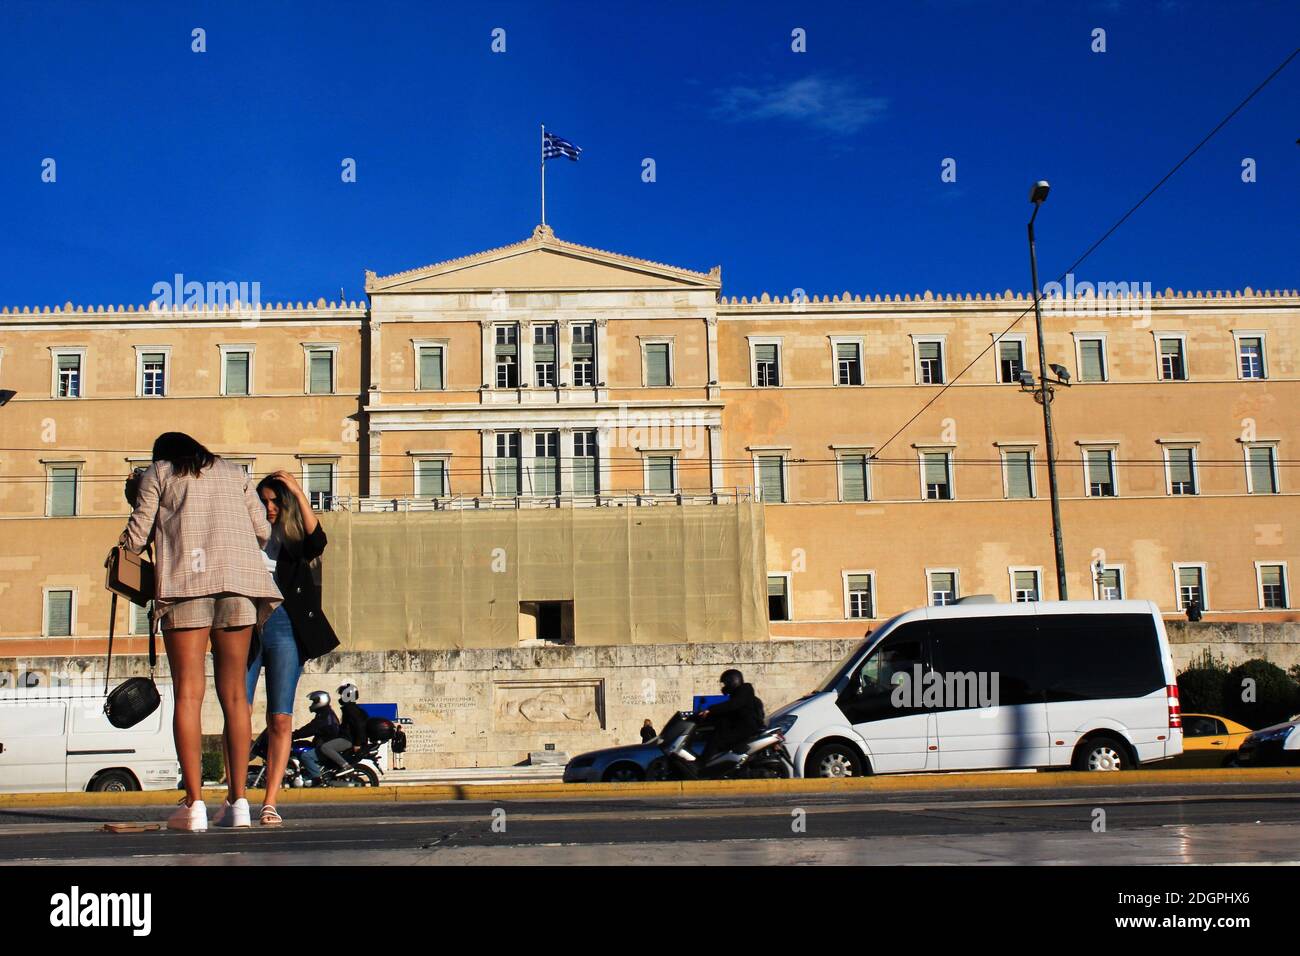 Menschen, die im Zentrum von Athen mit dem griechischen Parlament im Hintergrund spazieren - Athen, Griechenland, 5. November 2020. Stockfoto